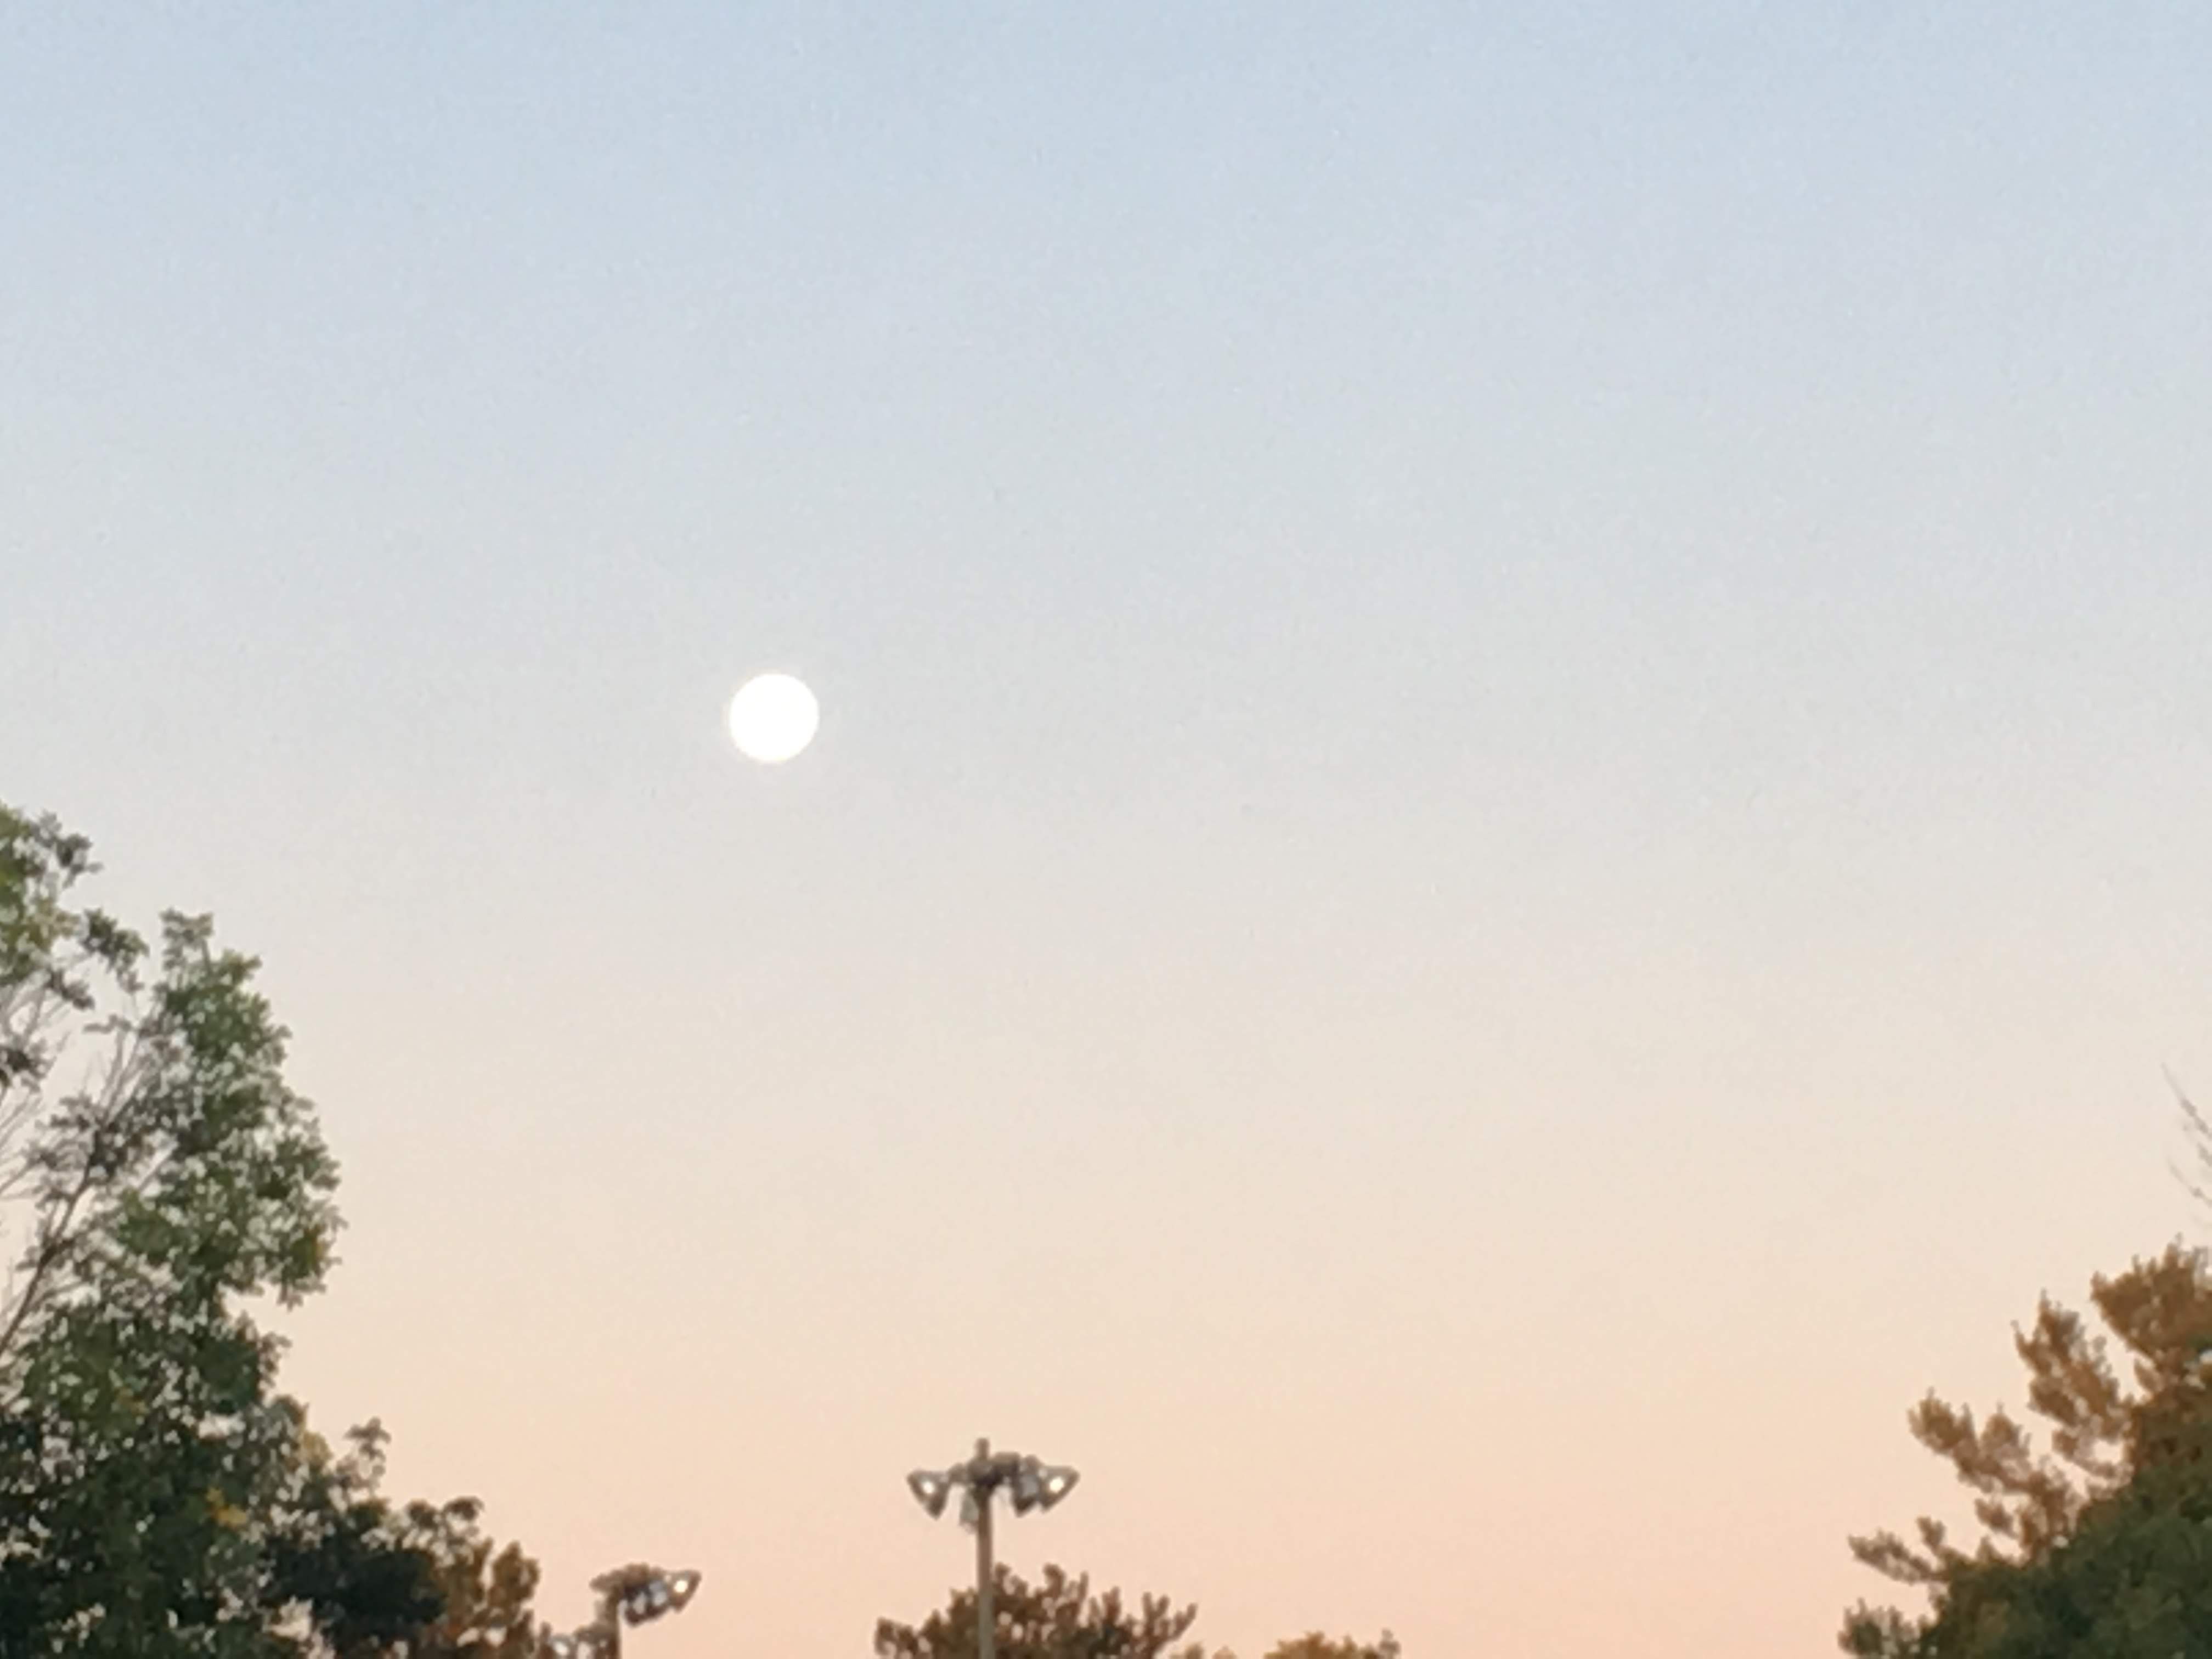 Full moon in the morning sky